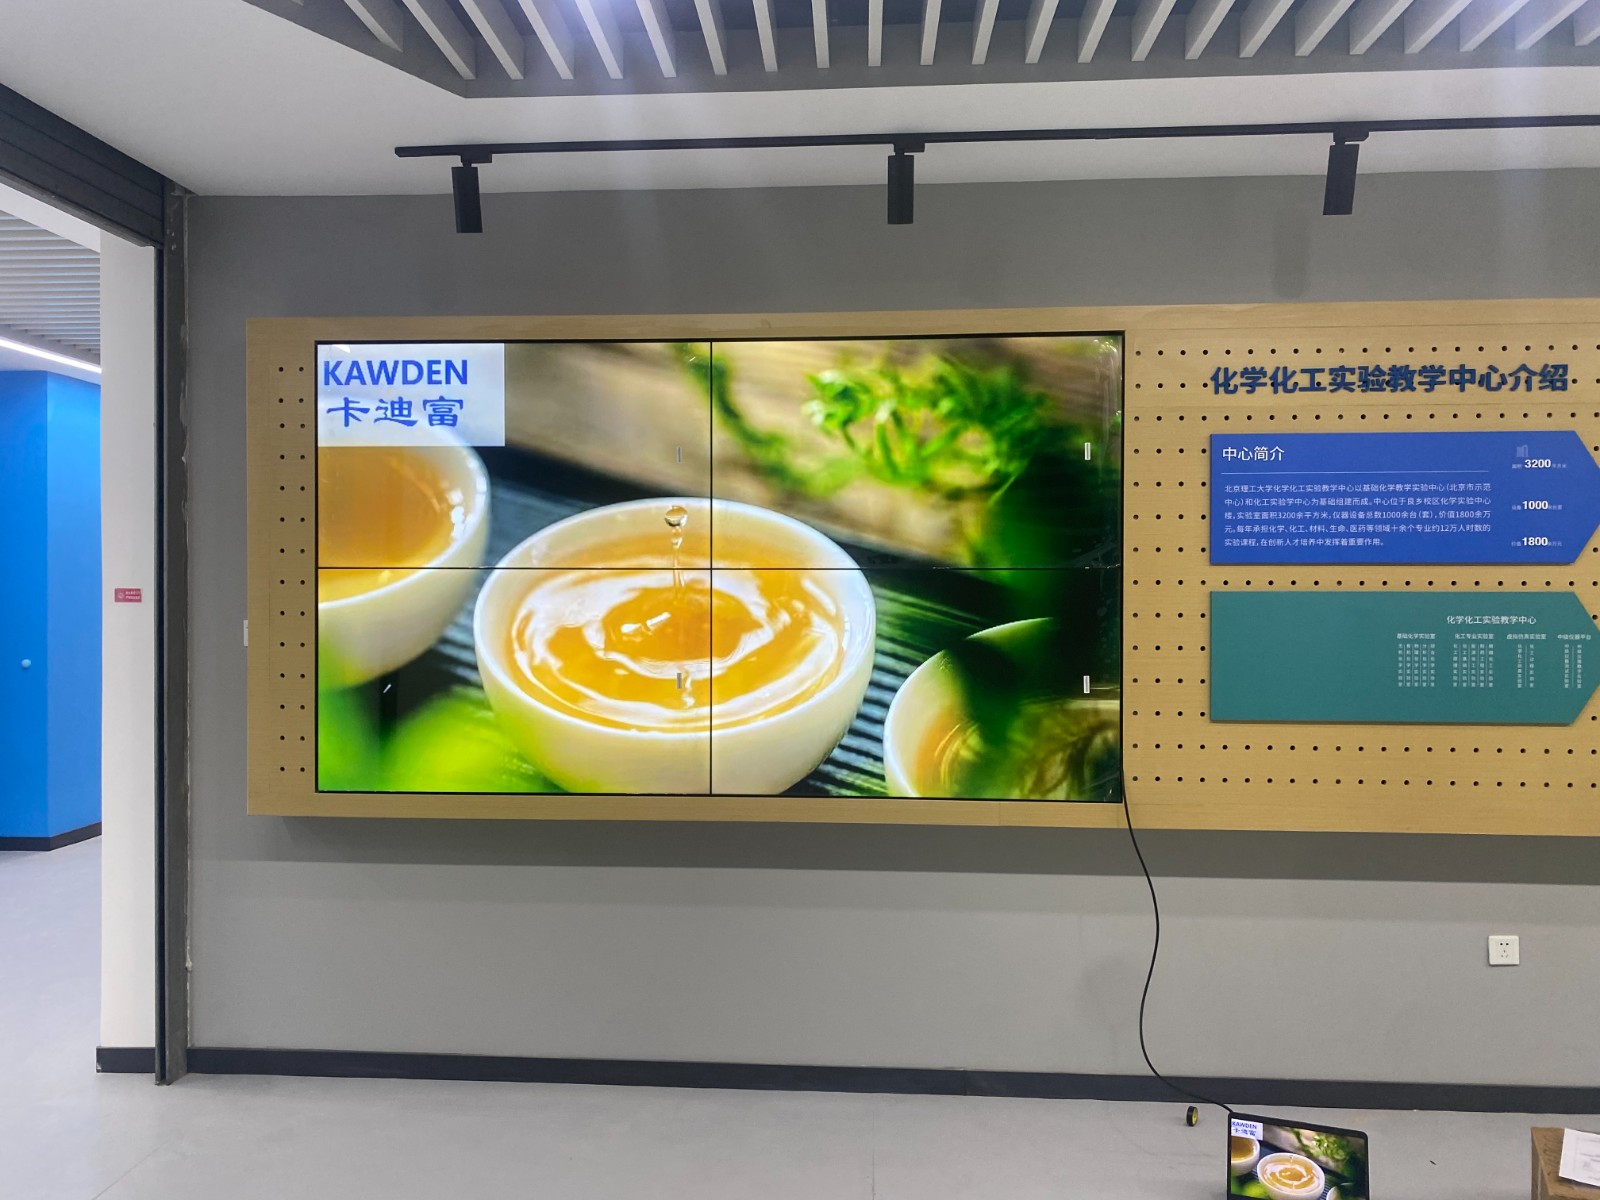 北京市丰台区某印刷公司项目55寸液晶拼接屏案例图片